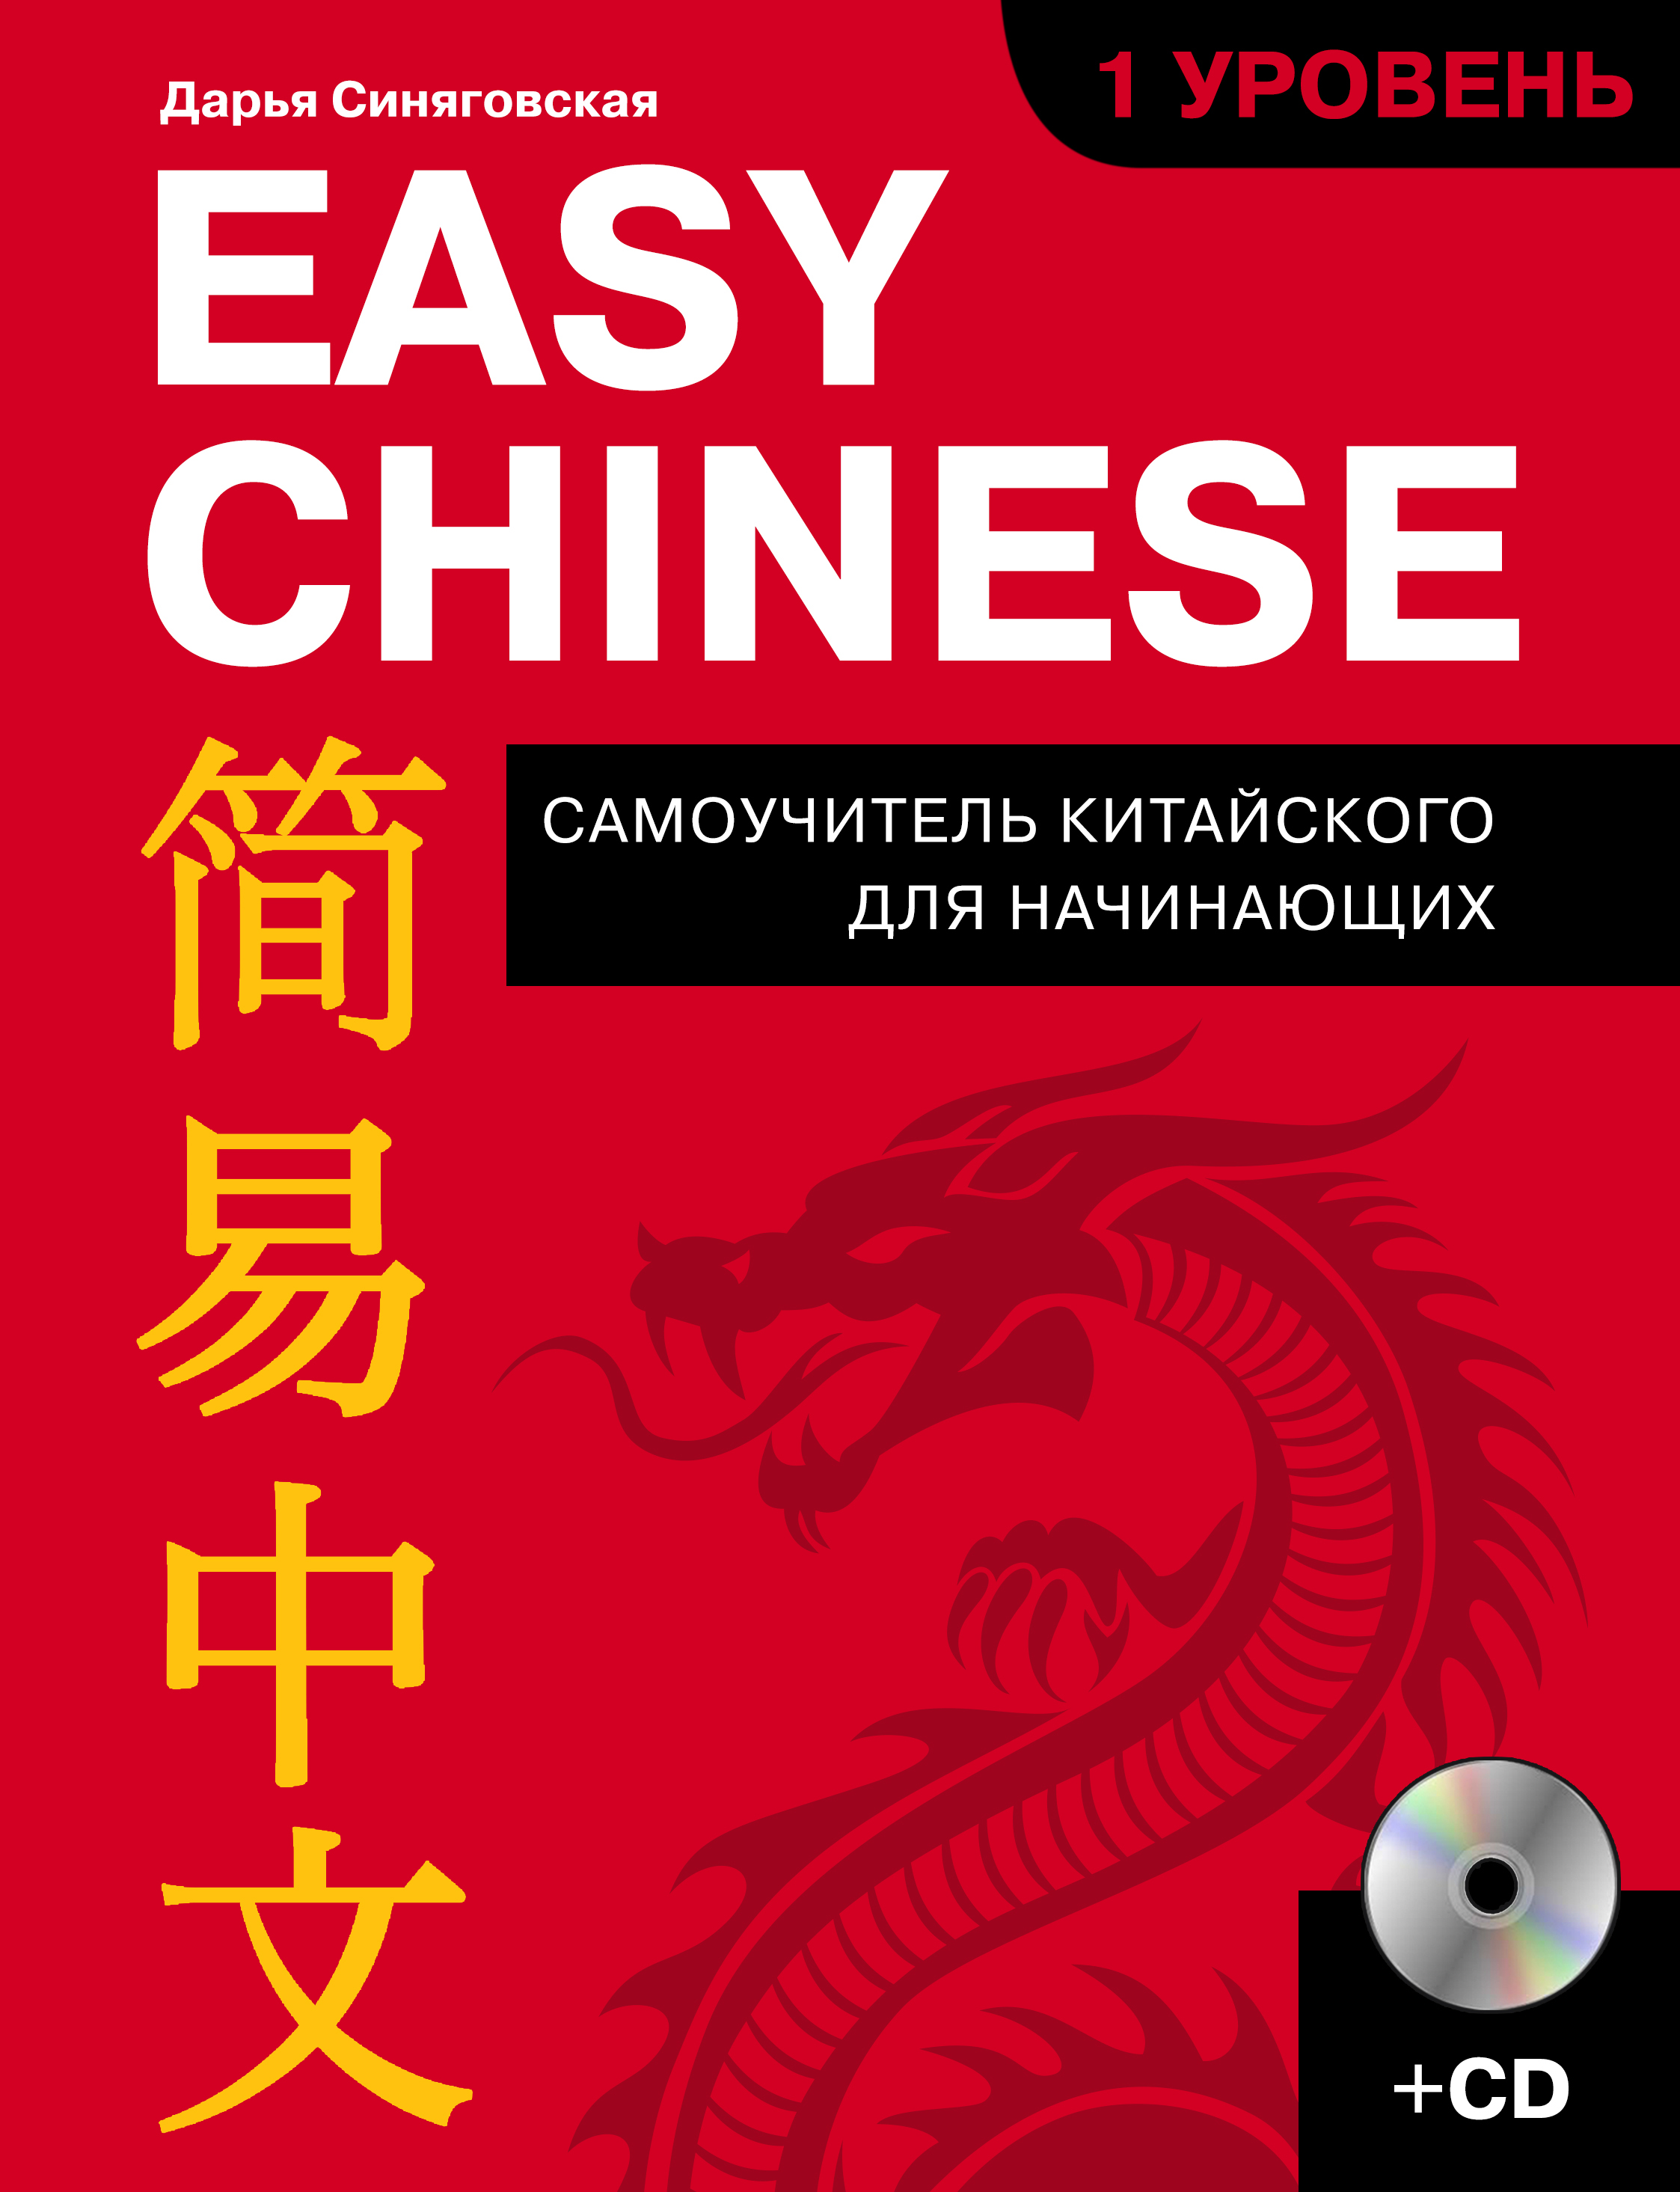 Easy Chinese. 1 уровень. Самоучитель китайского для начинающих (+ CD). Синяговская Дарья Константиновна